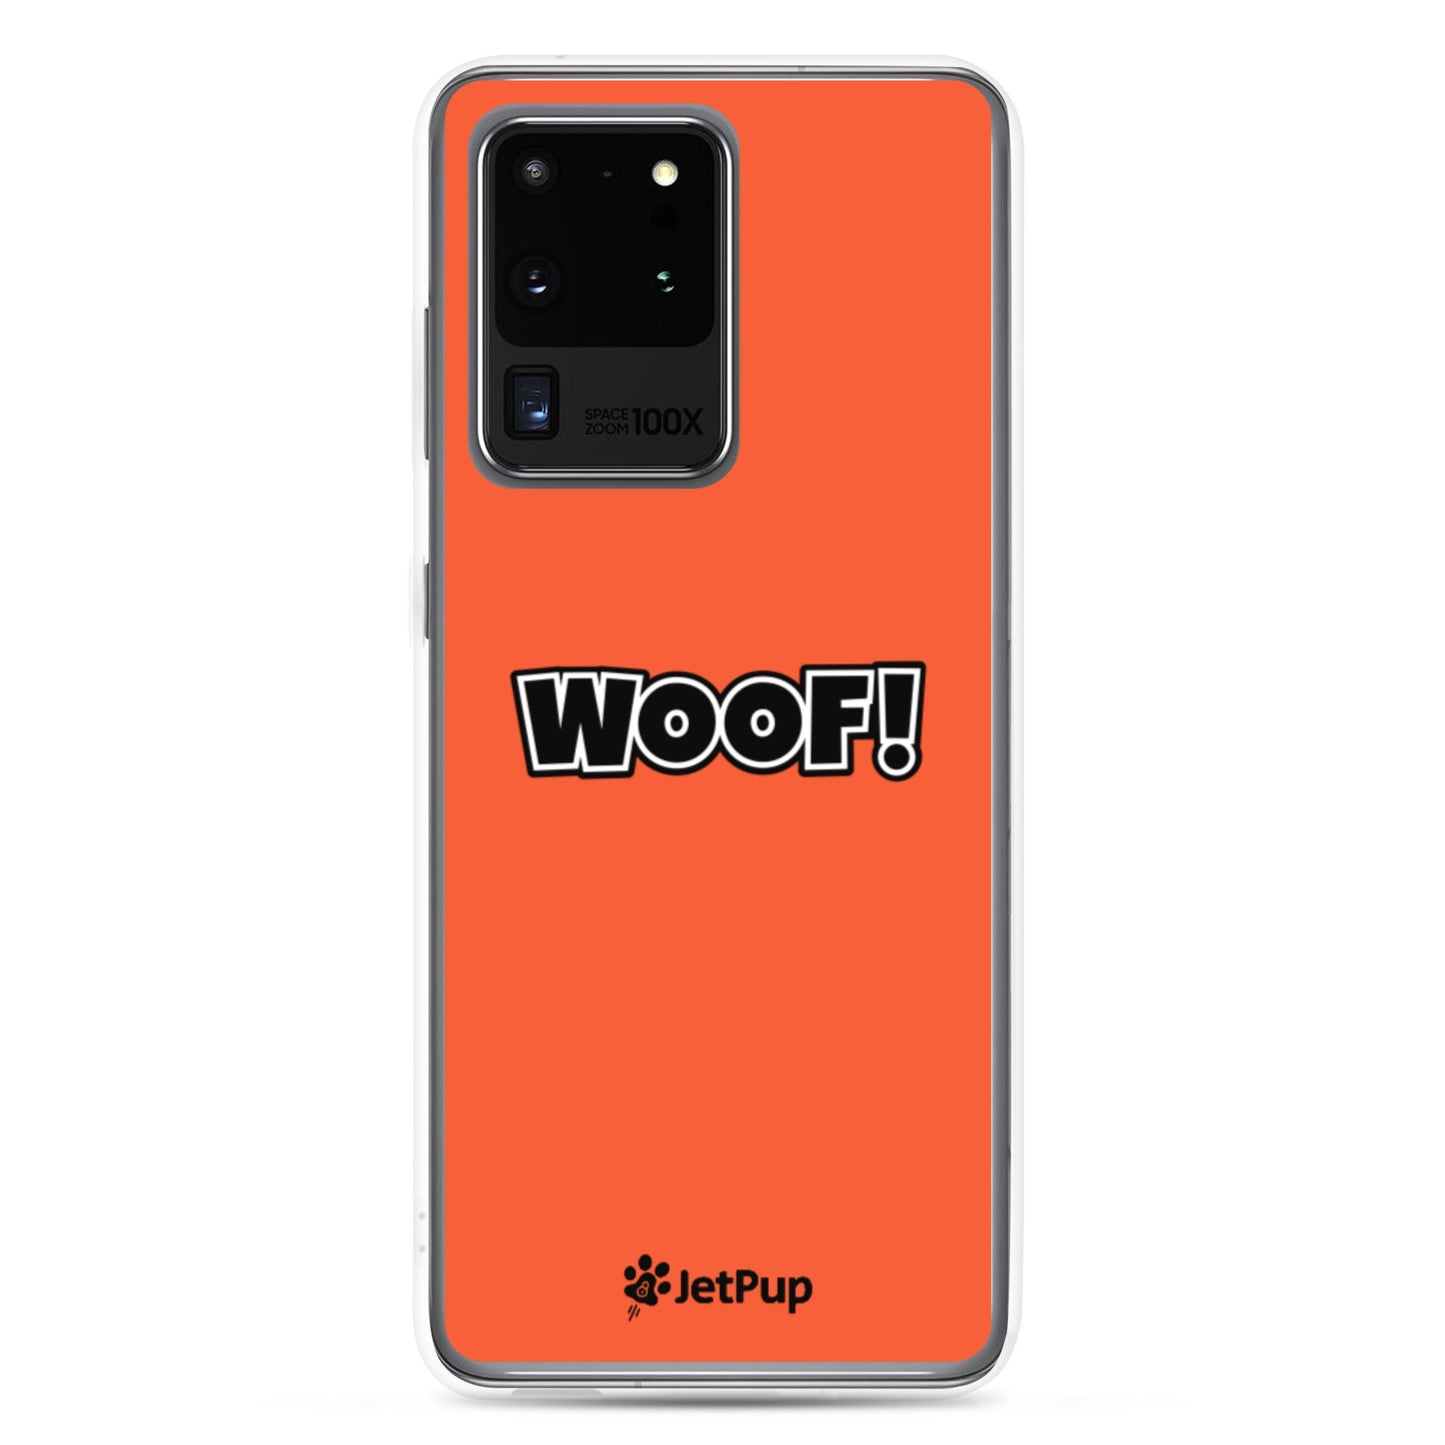 Woof Samsung Case - Orange - JetPup